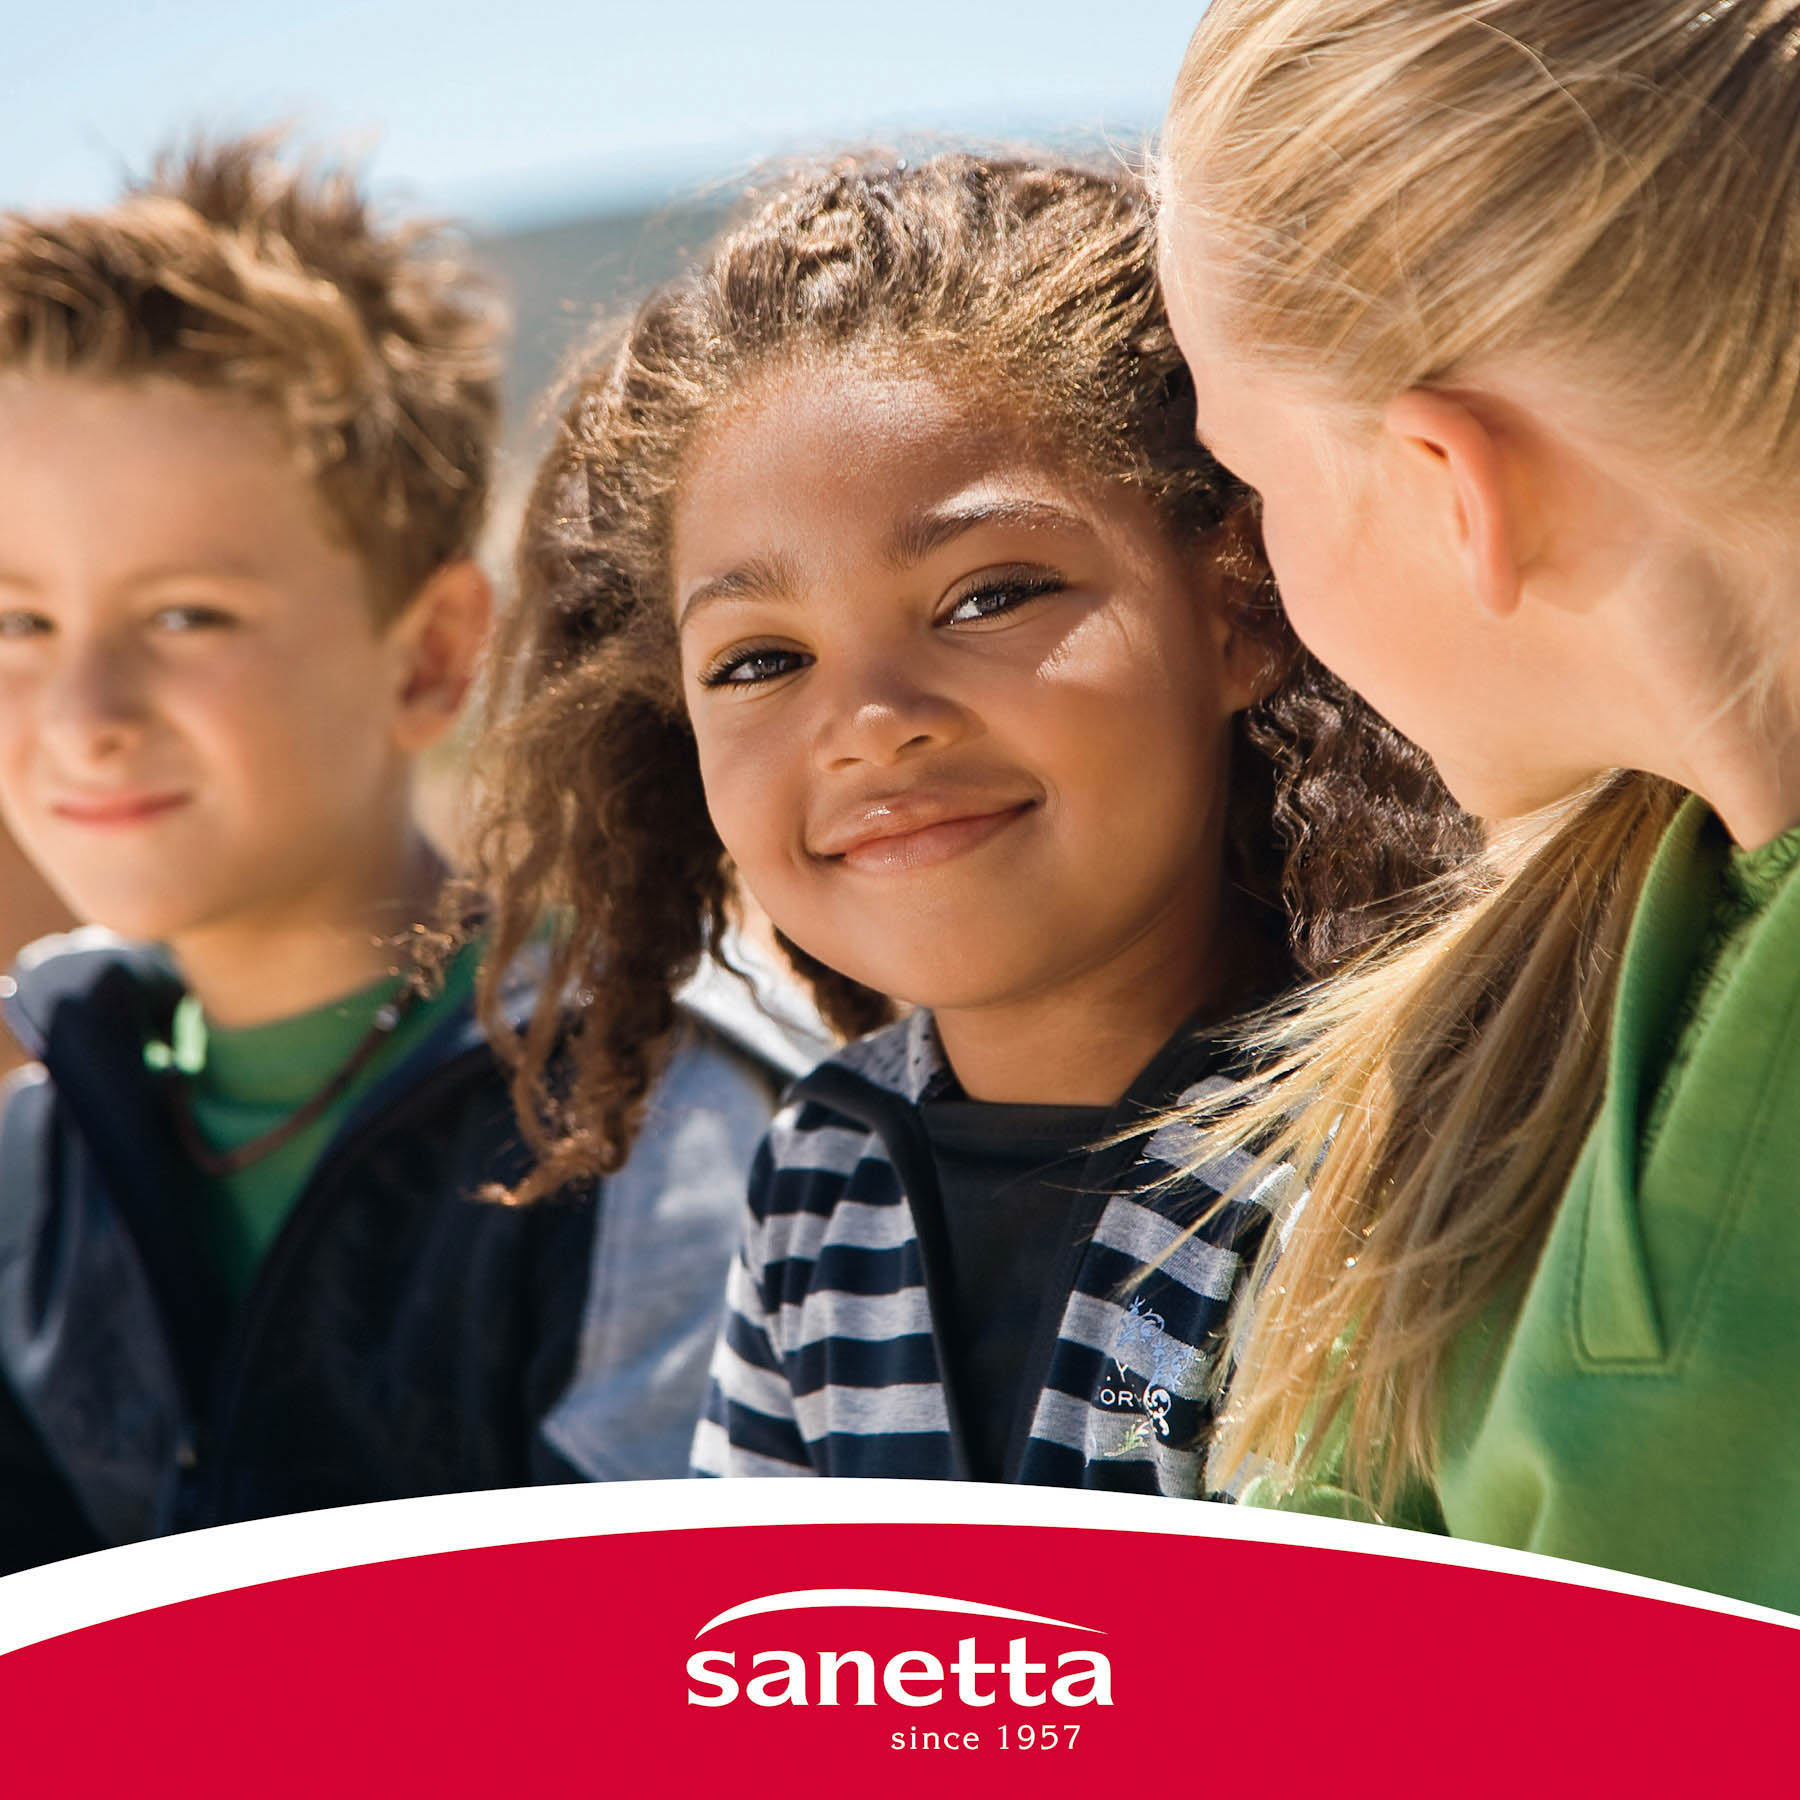 Drei Kinder lächeln im Freien; in der Mitte blickt ein Mädchen direkt in die Kamera, auf jeder Seite zwei Jungen, von denen einer teilweise sichtbar ist. Darunter ist das Logo von Sanetta zu sehen. Im Hintergrund ein heller, sonniger Tag. © Fotografie Tomas Rodriguez